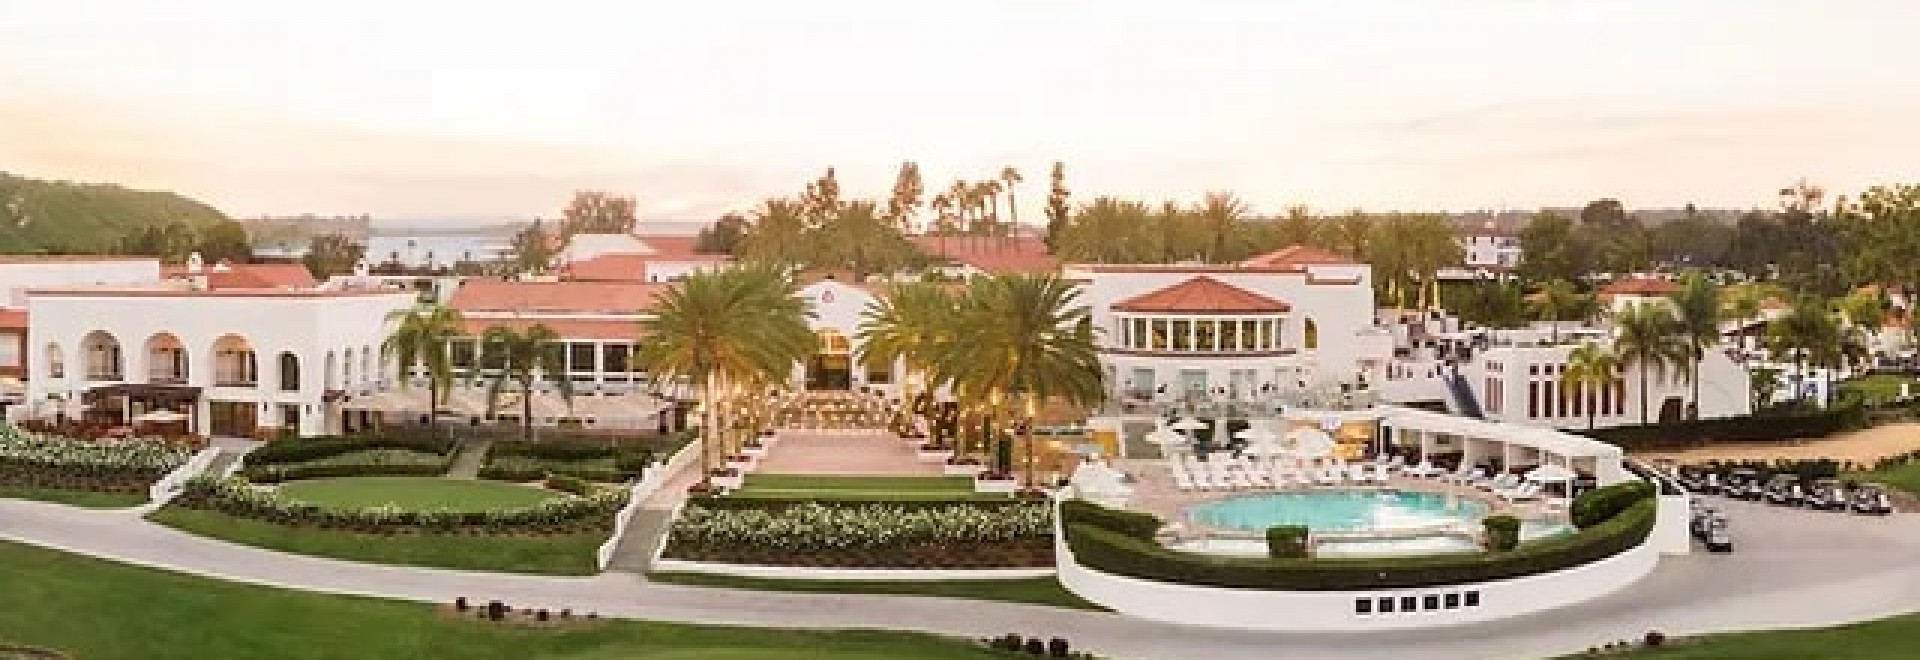 Omni La Costa Resort & Spa, California - Book. Travel. Play.